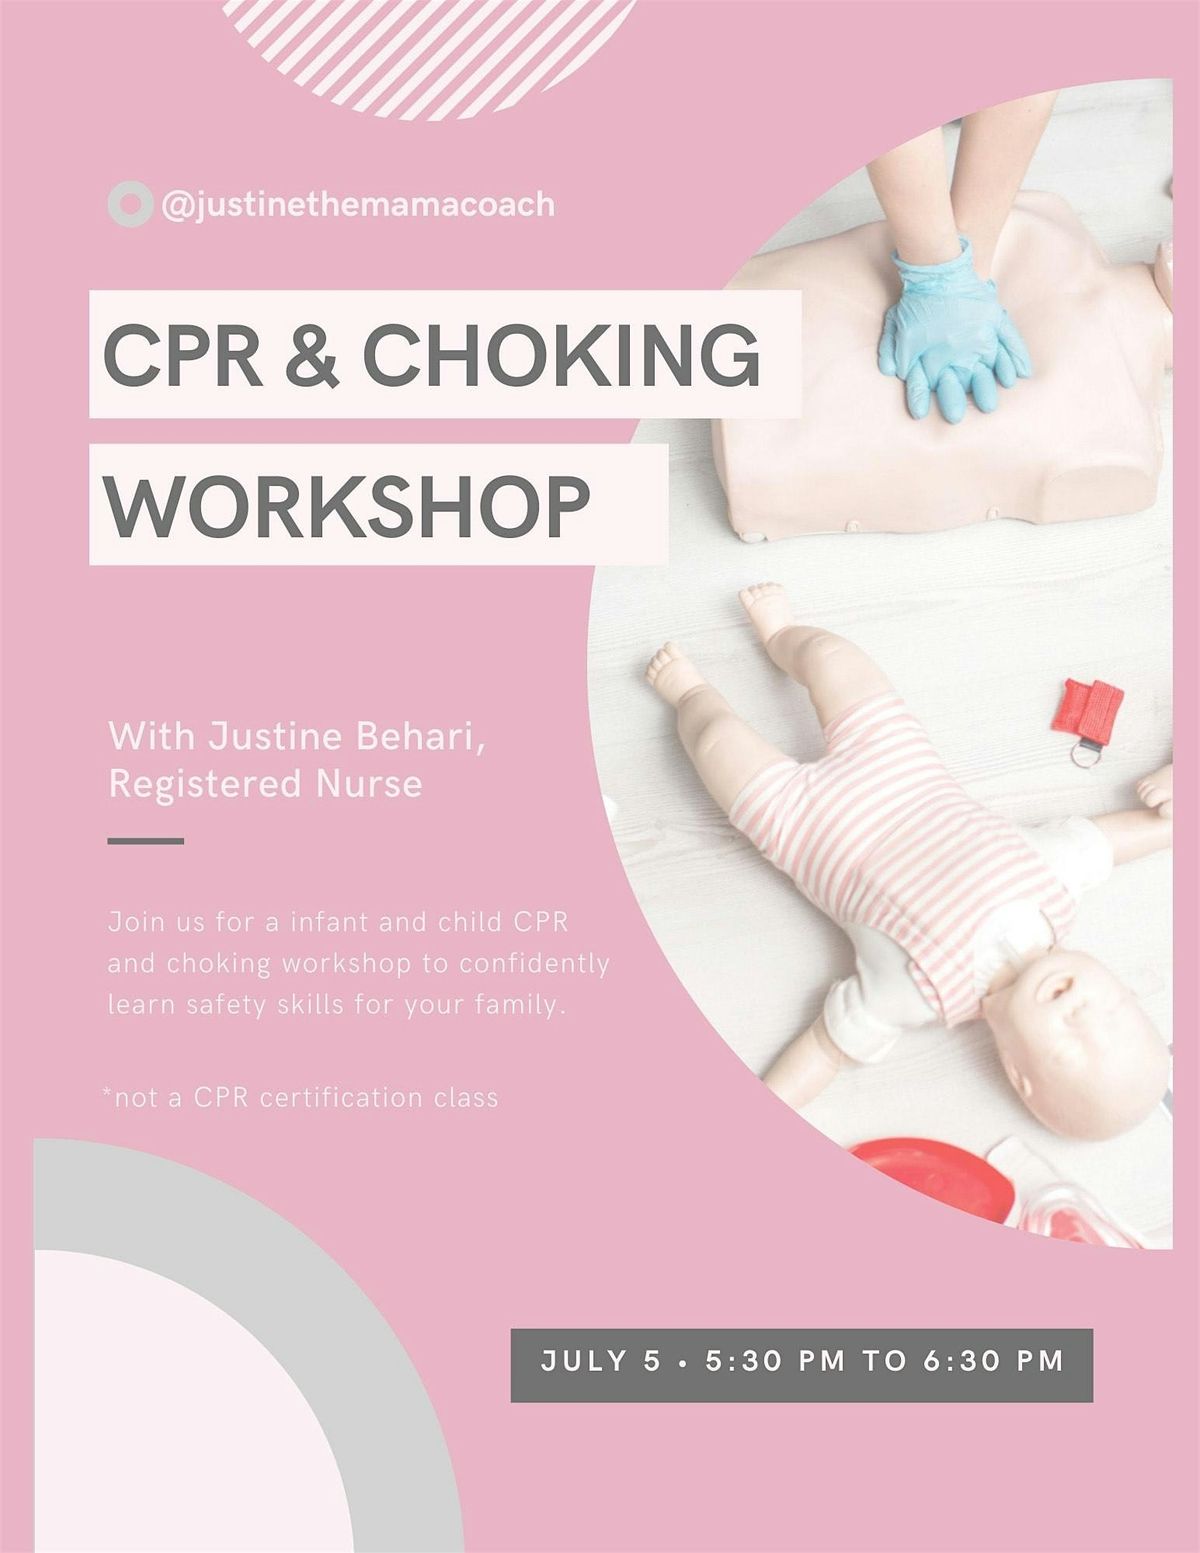 CPR & Choking Workshop with Justine Behari, RN